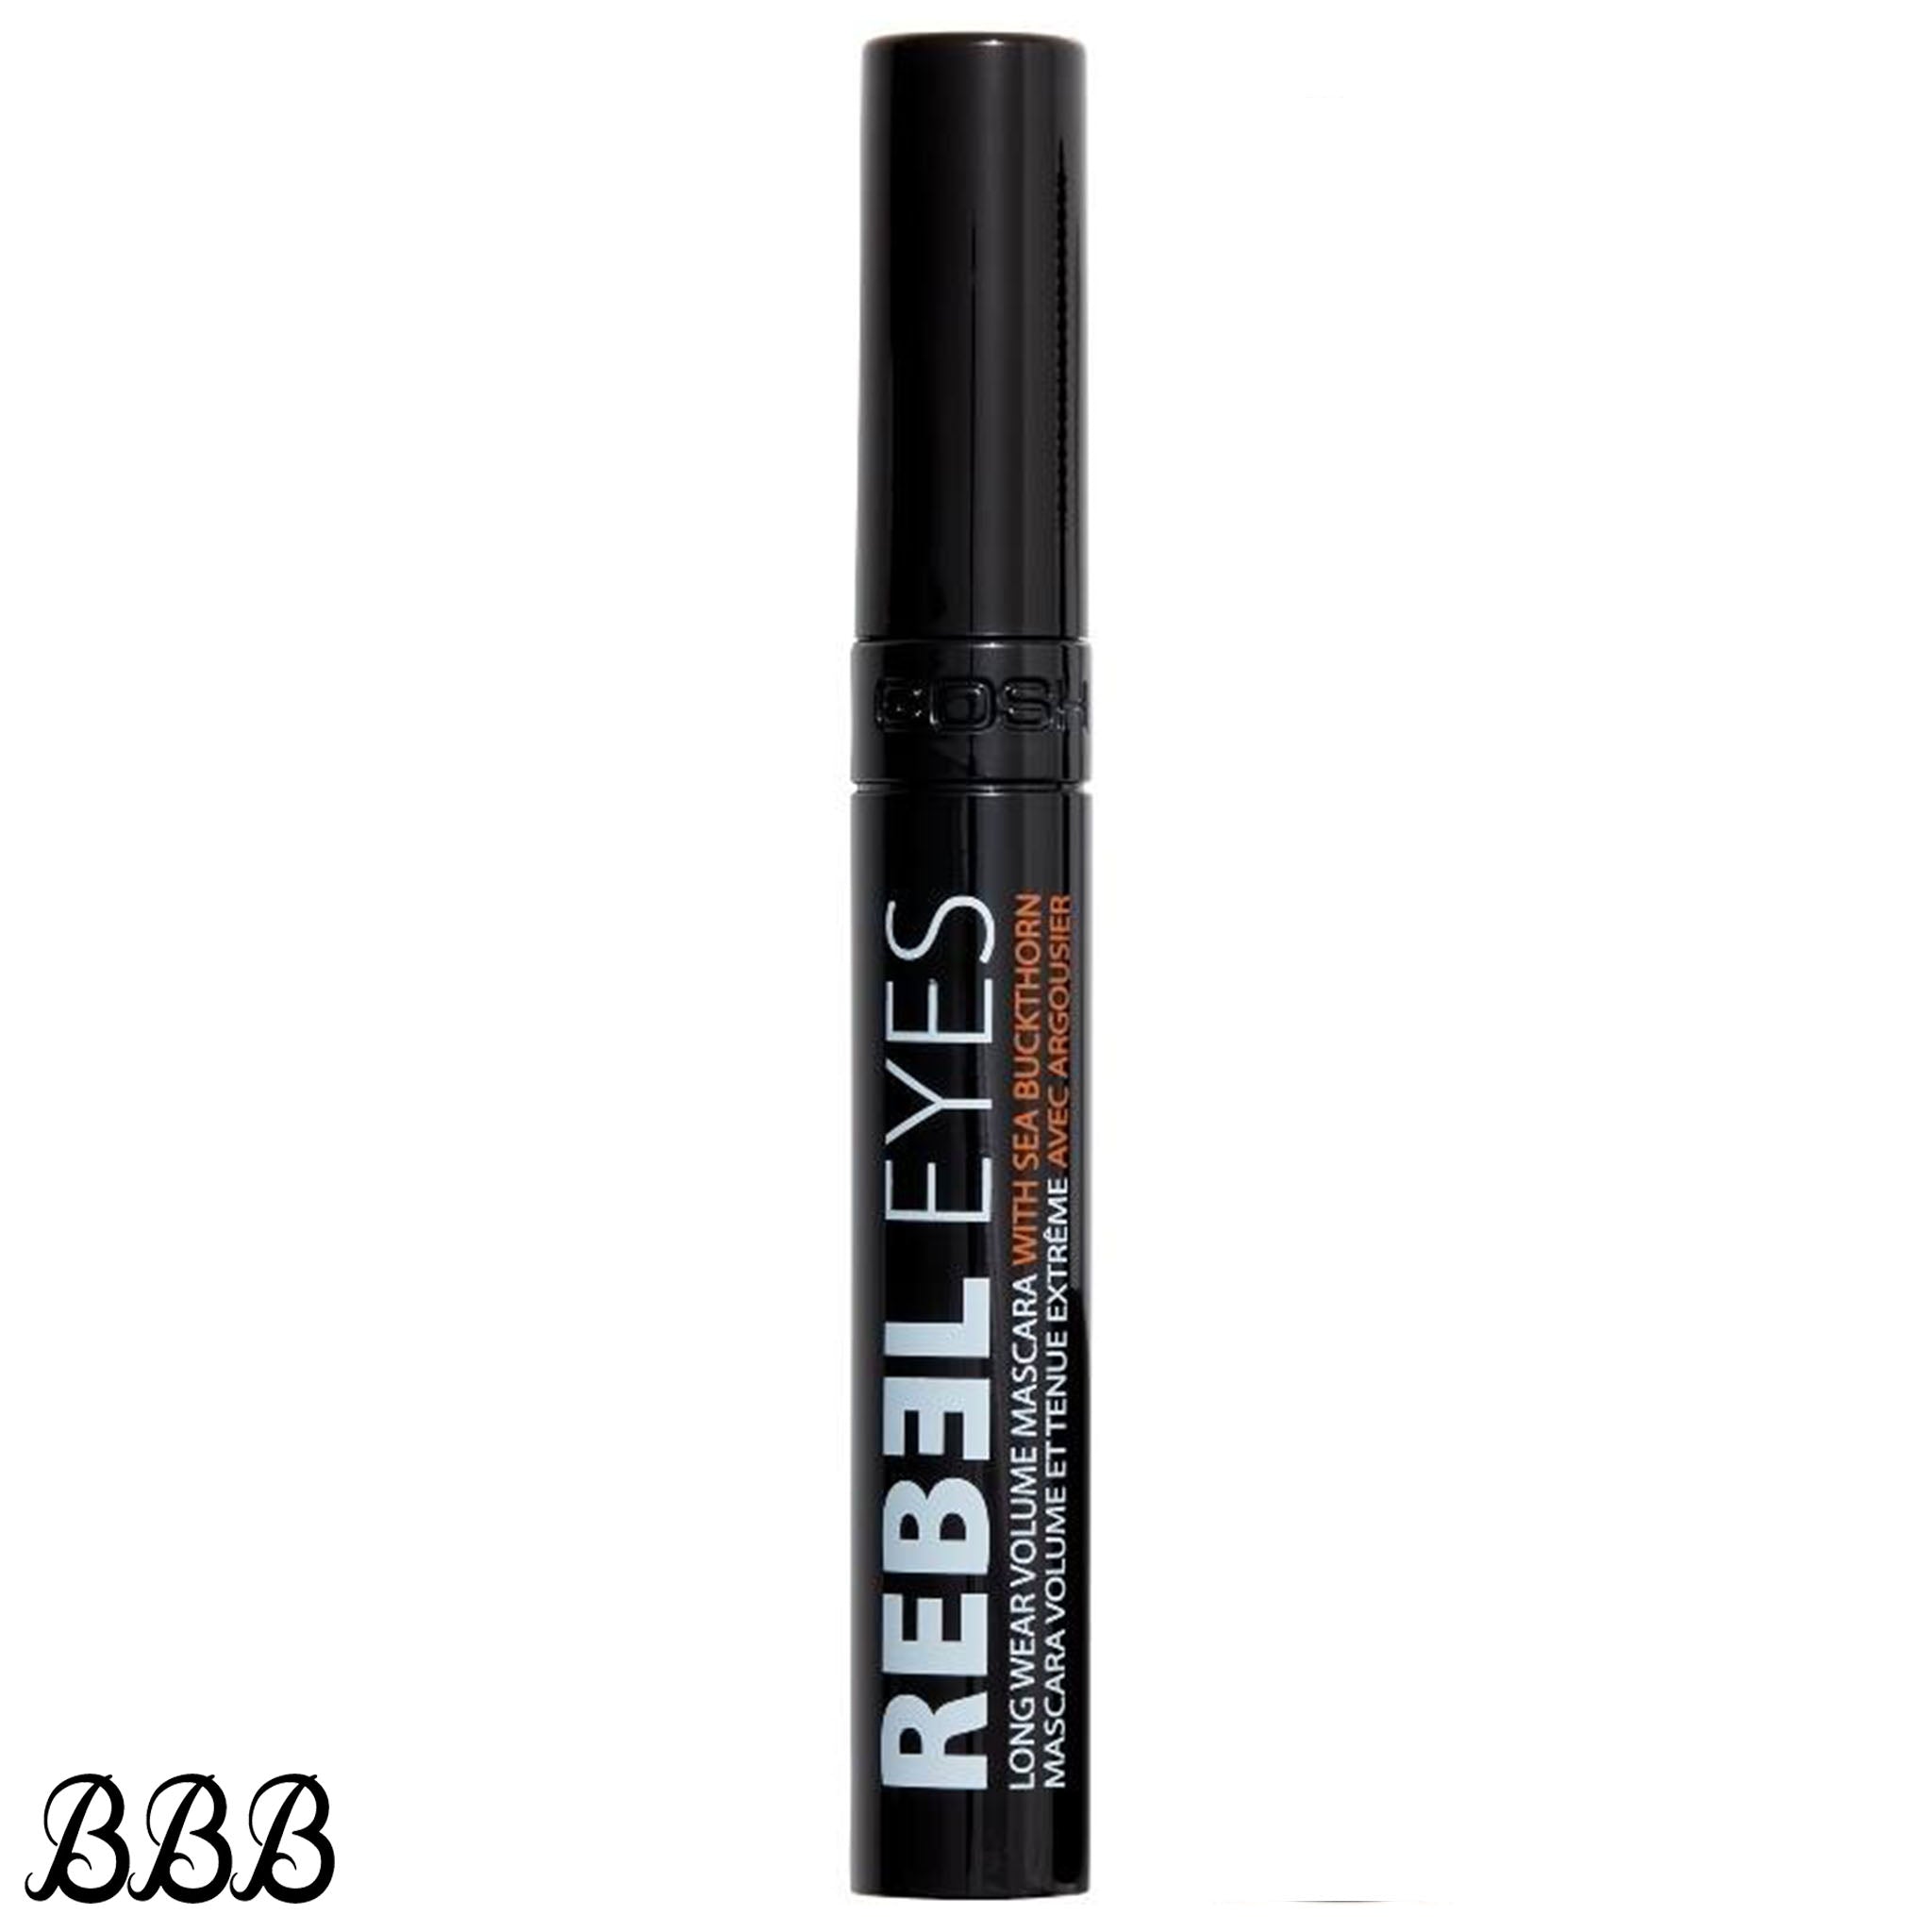 Gosh Rebel Eyes Mascara 002 Carbon Black - Budget Beauty (BBB)